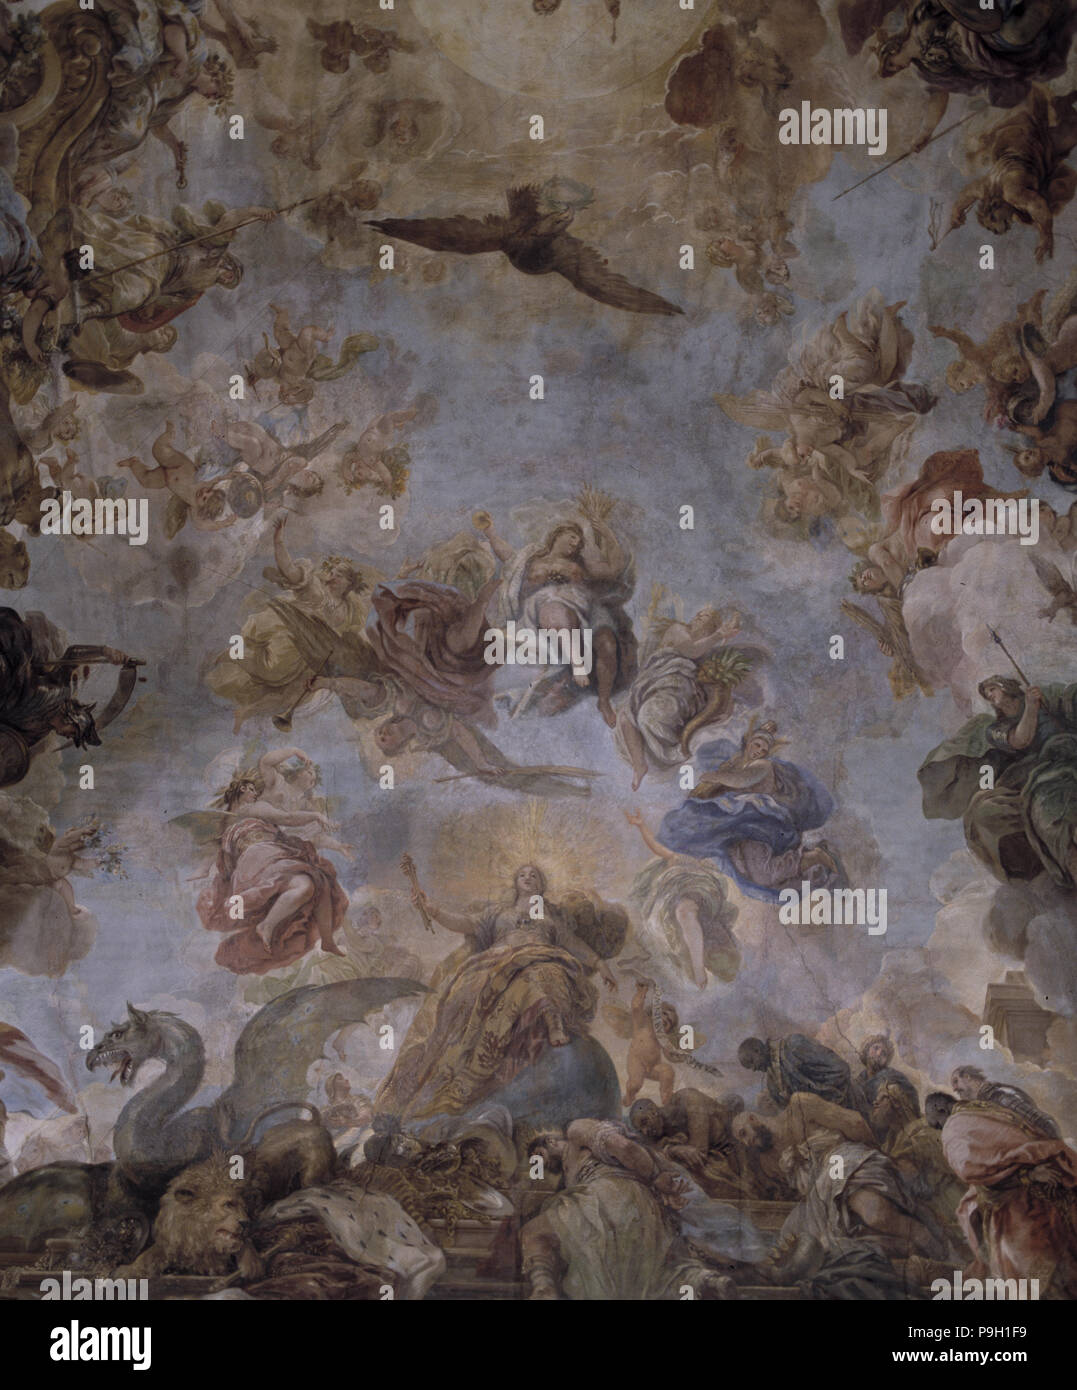 Los frescos de la bóveda de la Cason del Buen Retiro, de Luca Giordano. Foto de stock